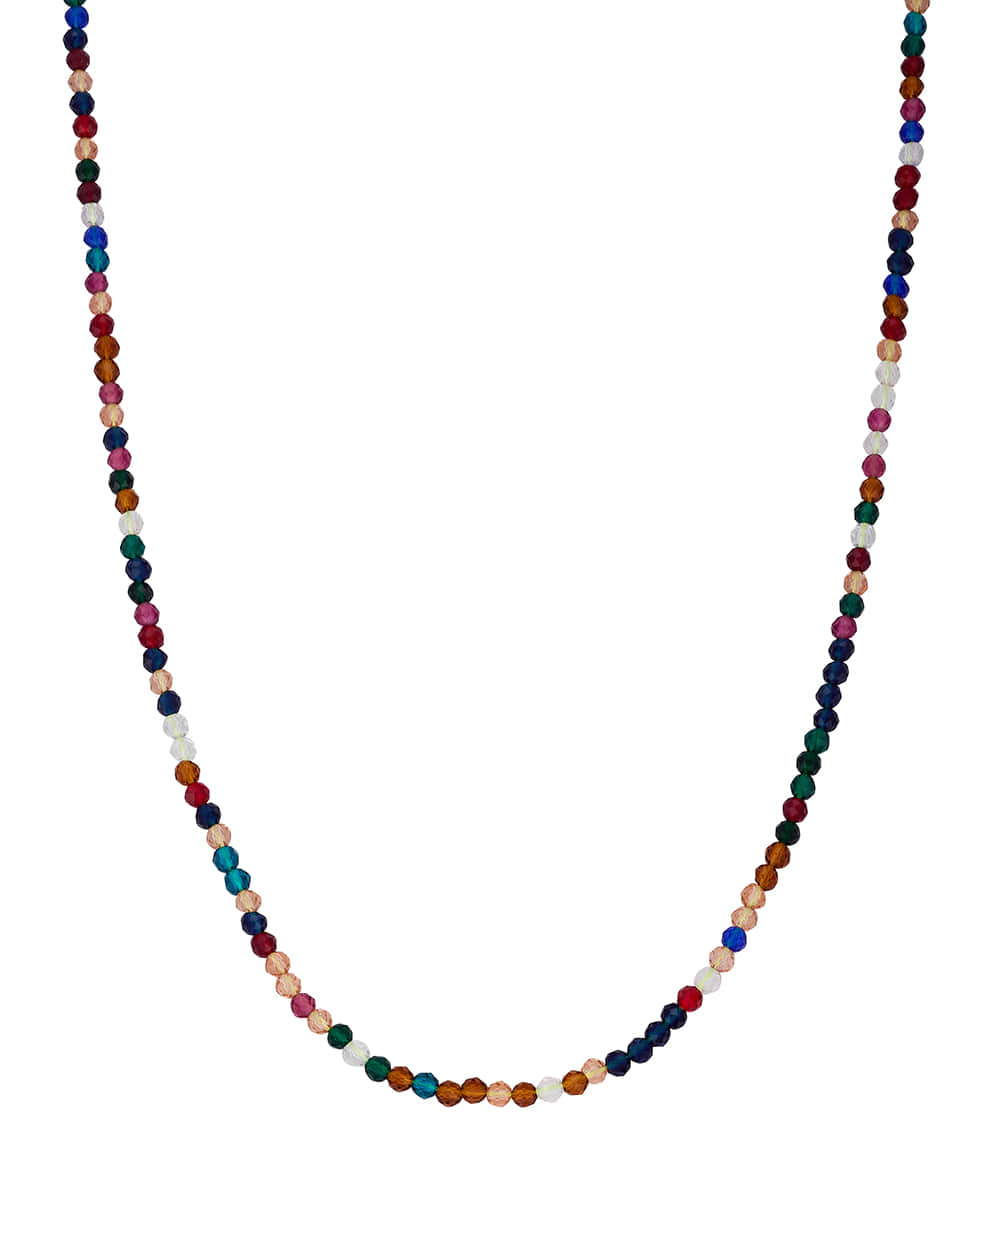 형형색색 비즈 목걸이 Colorful beads necklace